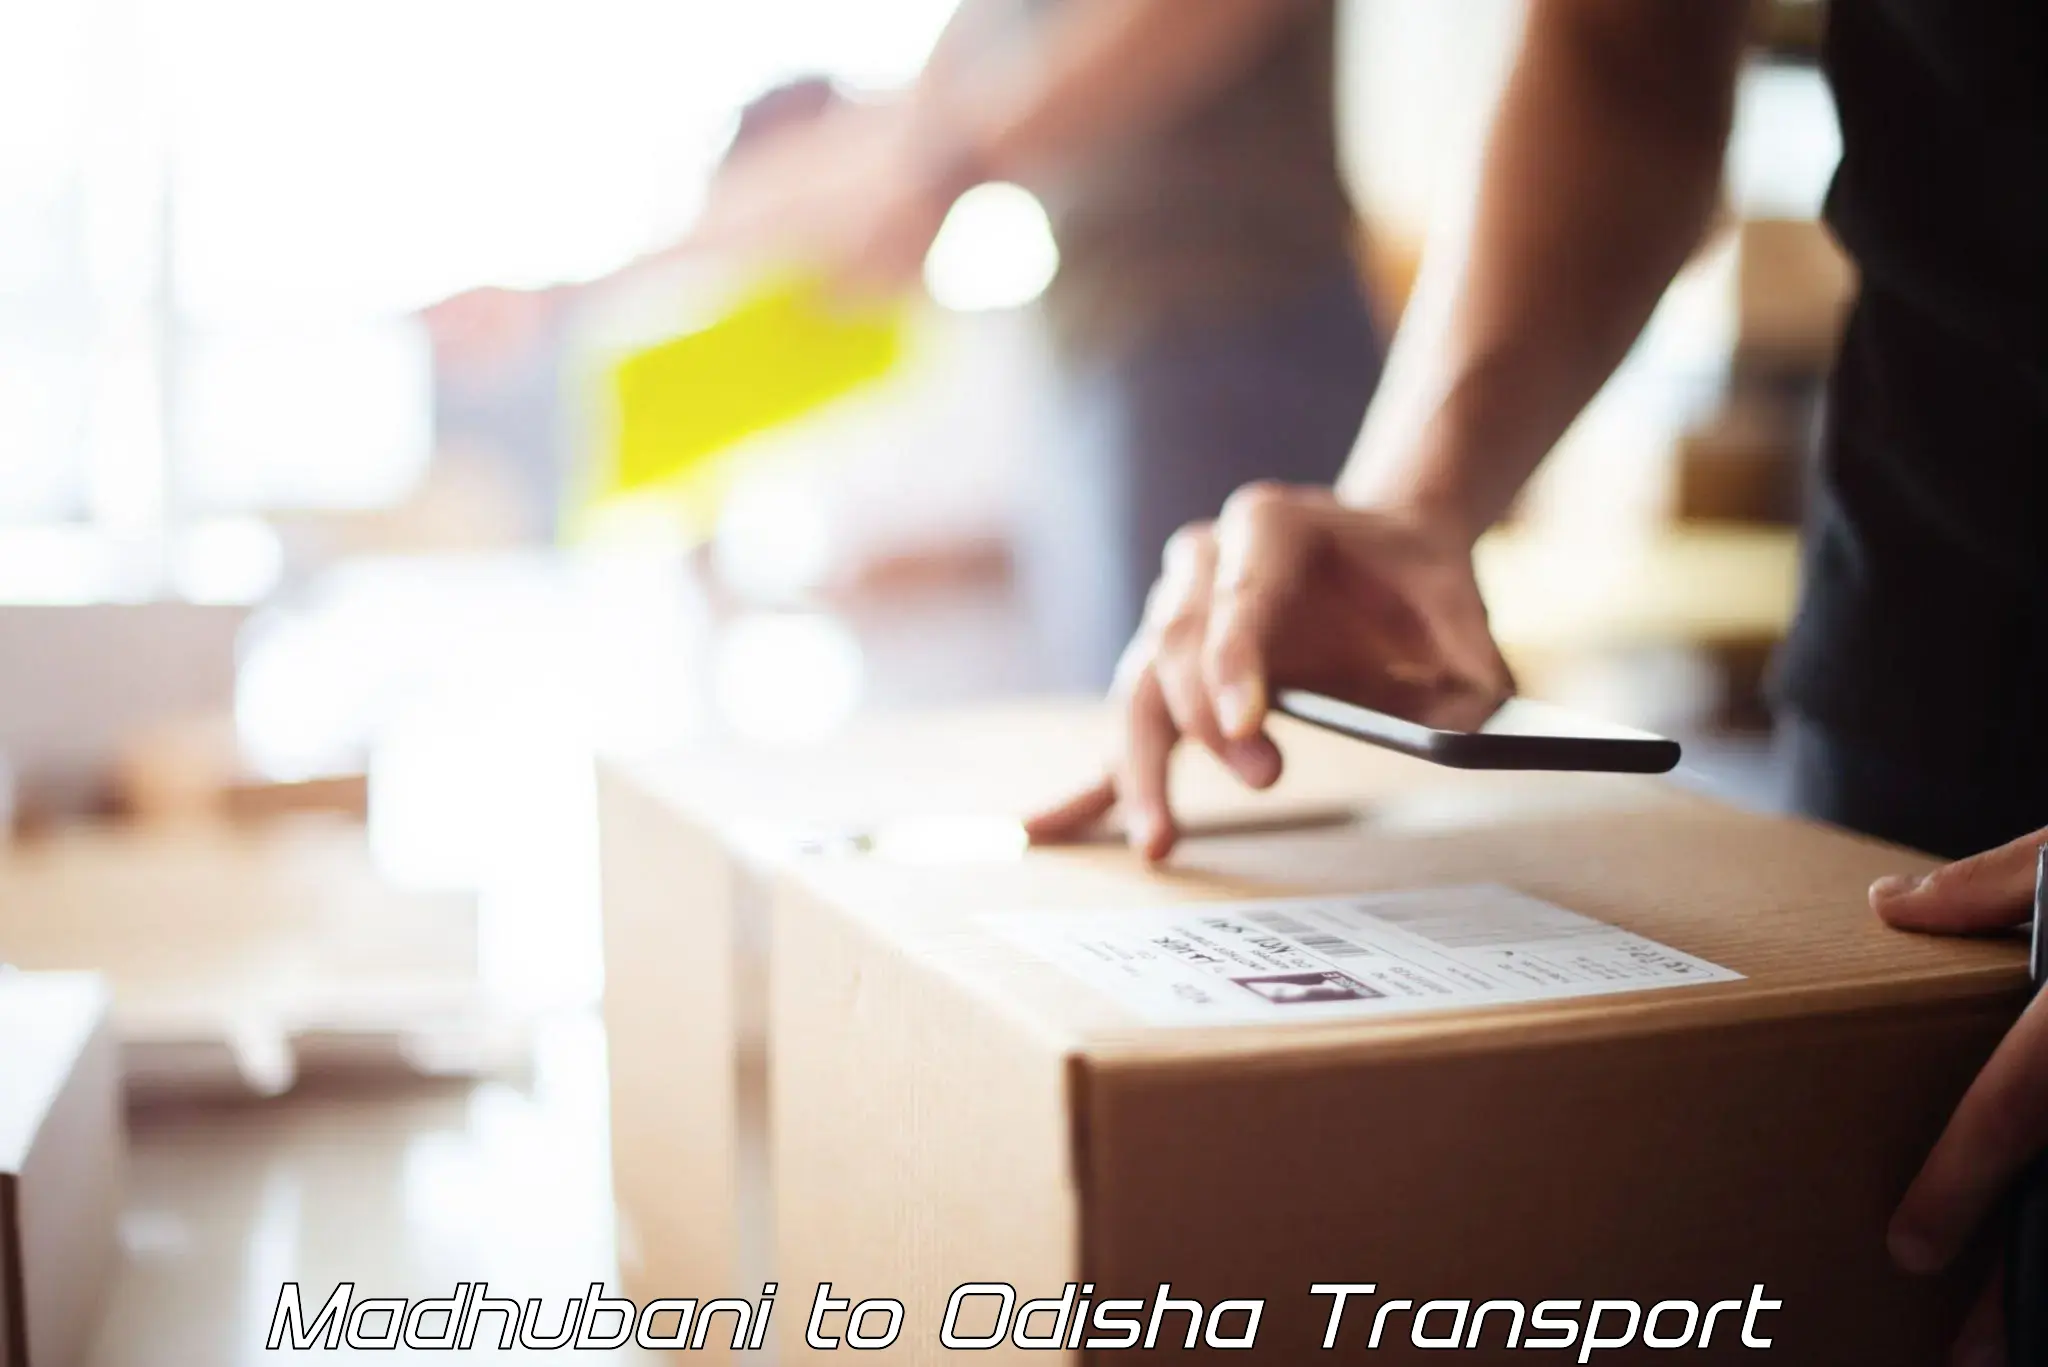 India truck logistics services Madhubani to Mathili